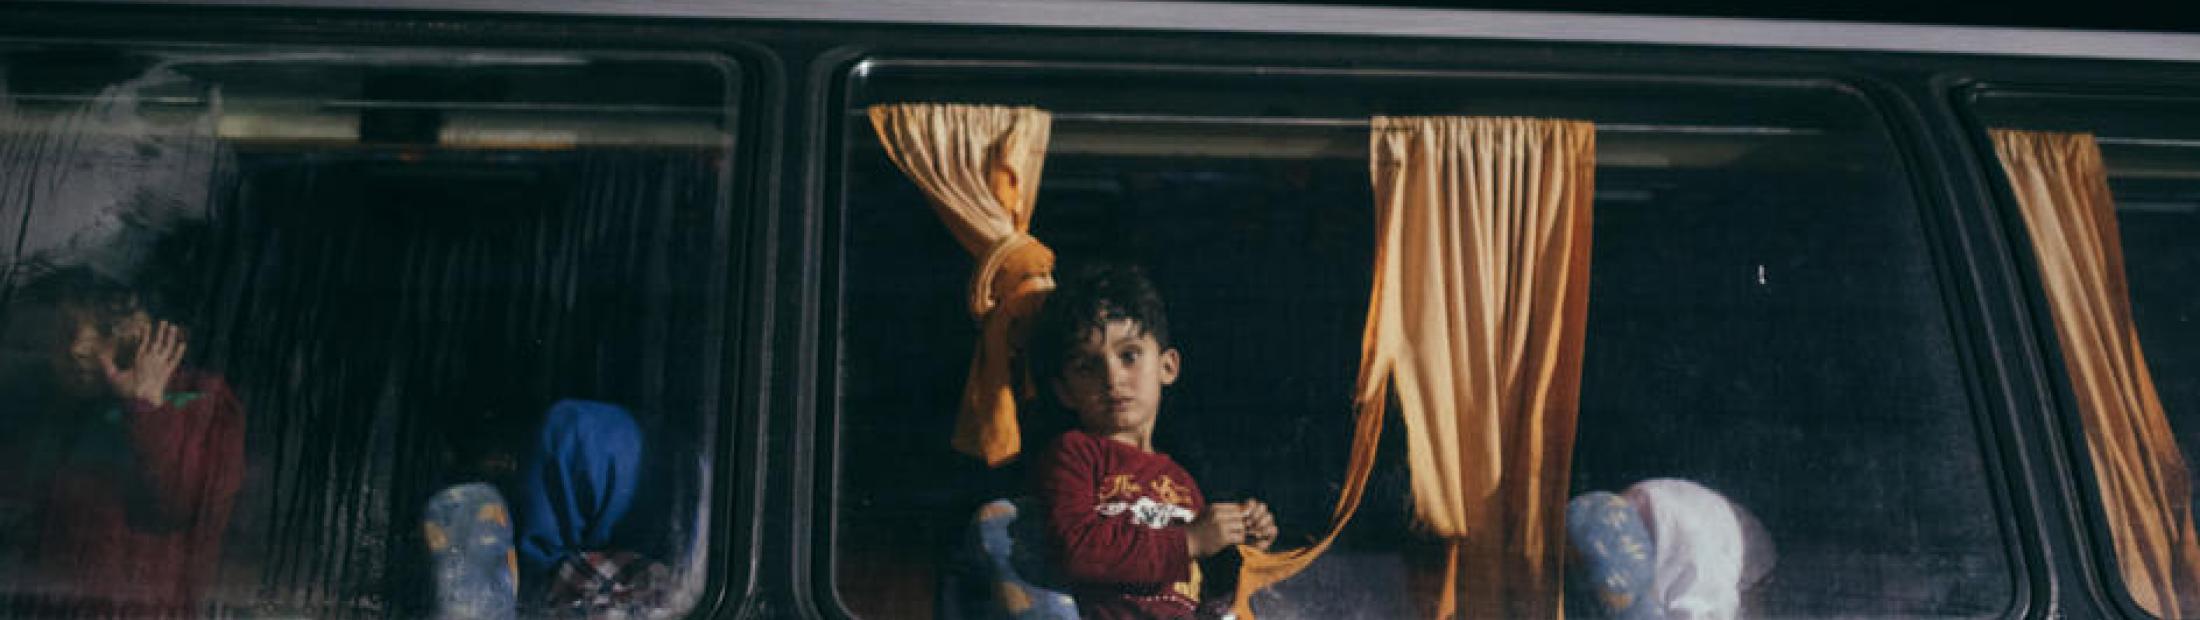 Refugiados sirios en Grecia, una historia de huida y de esperanza